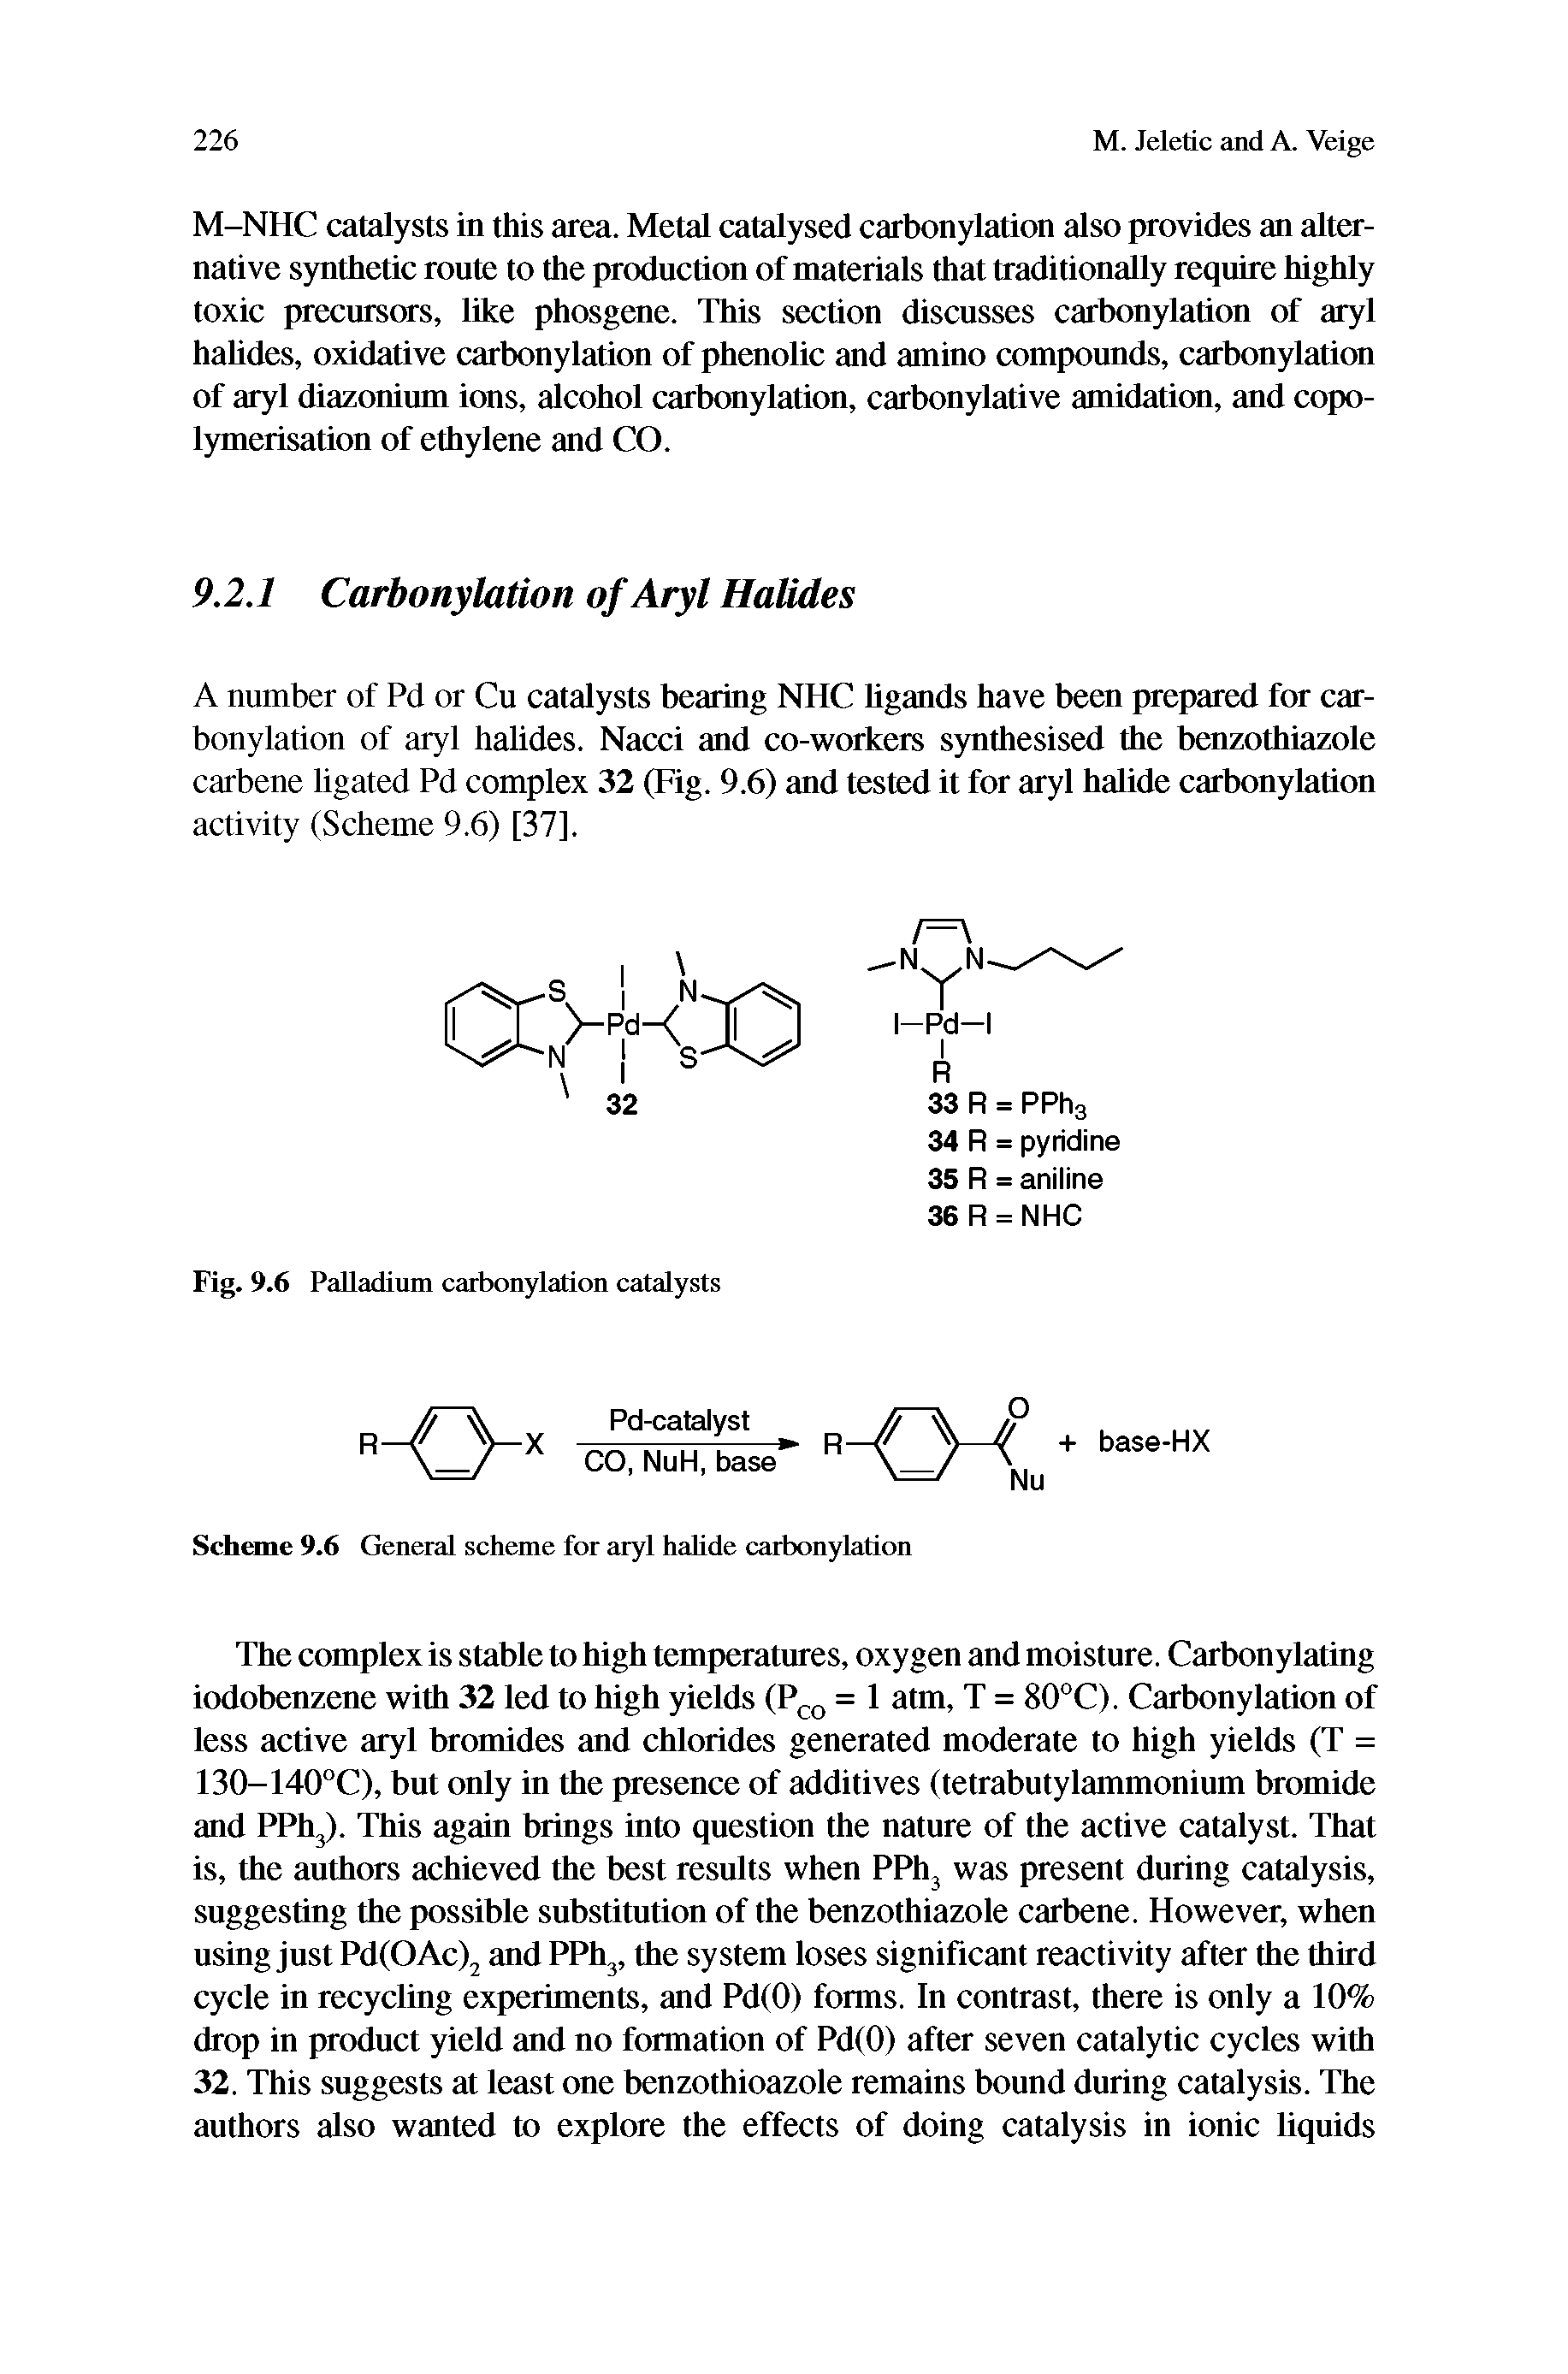 Scheme 9.6 General scheme for aryl halide carbonylation...